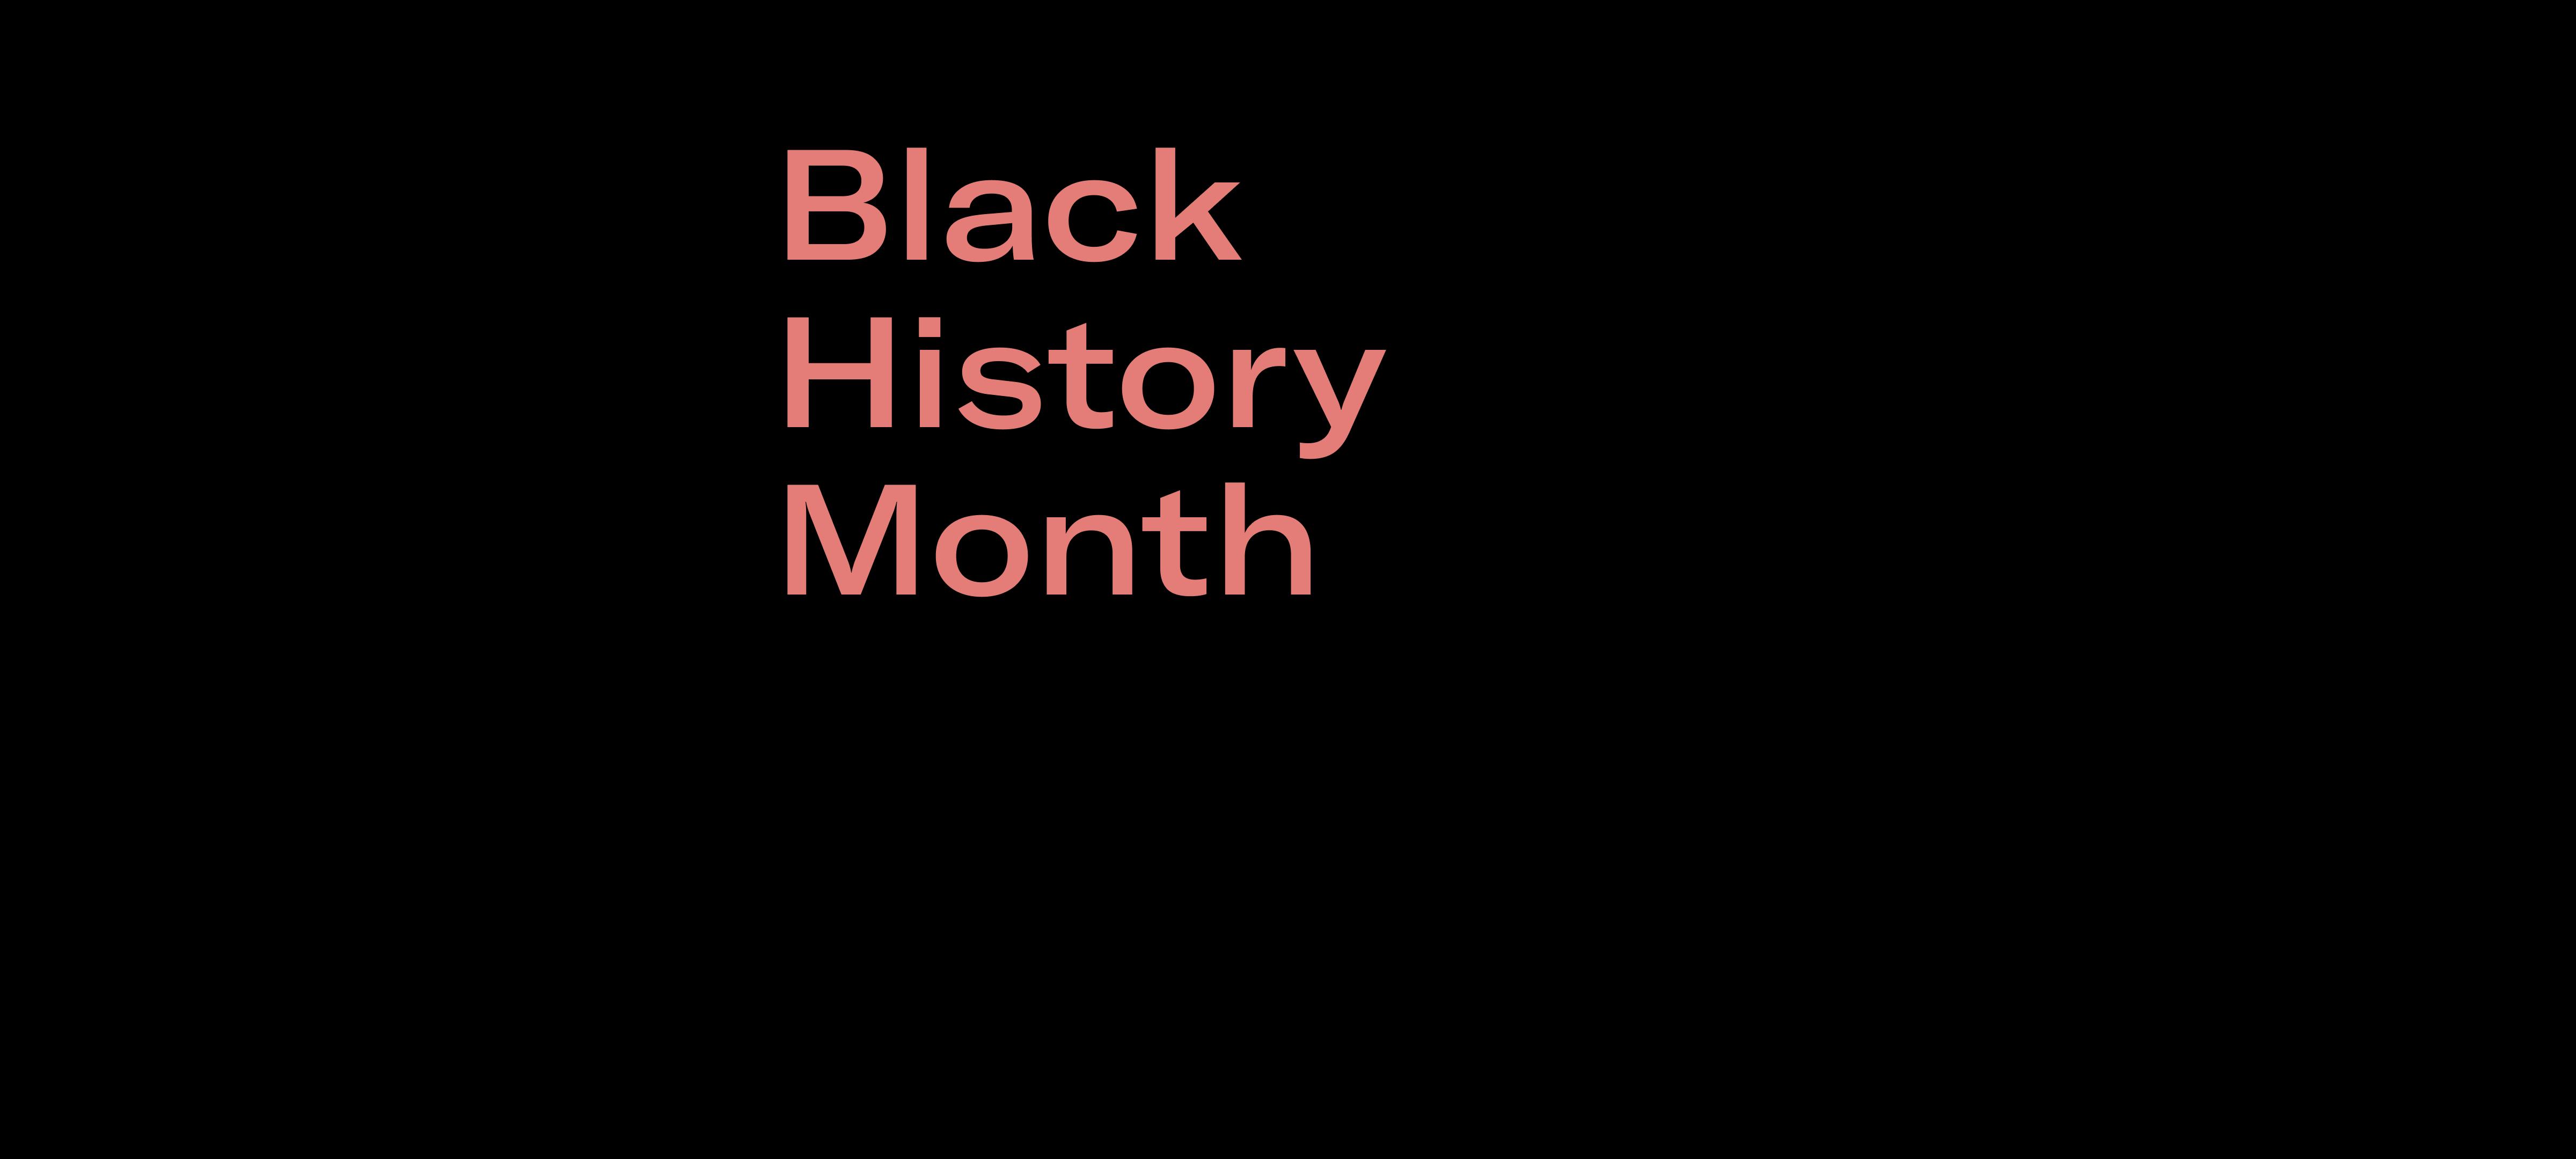 Black History Month: Week 2